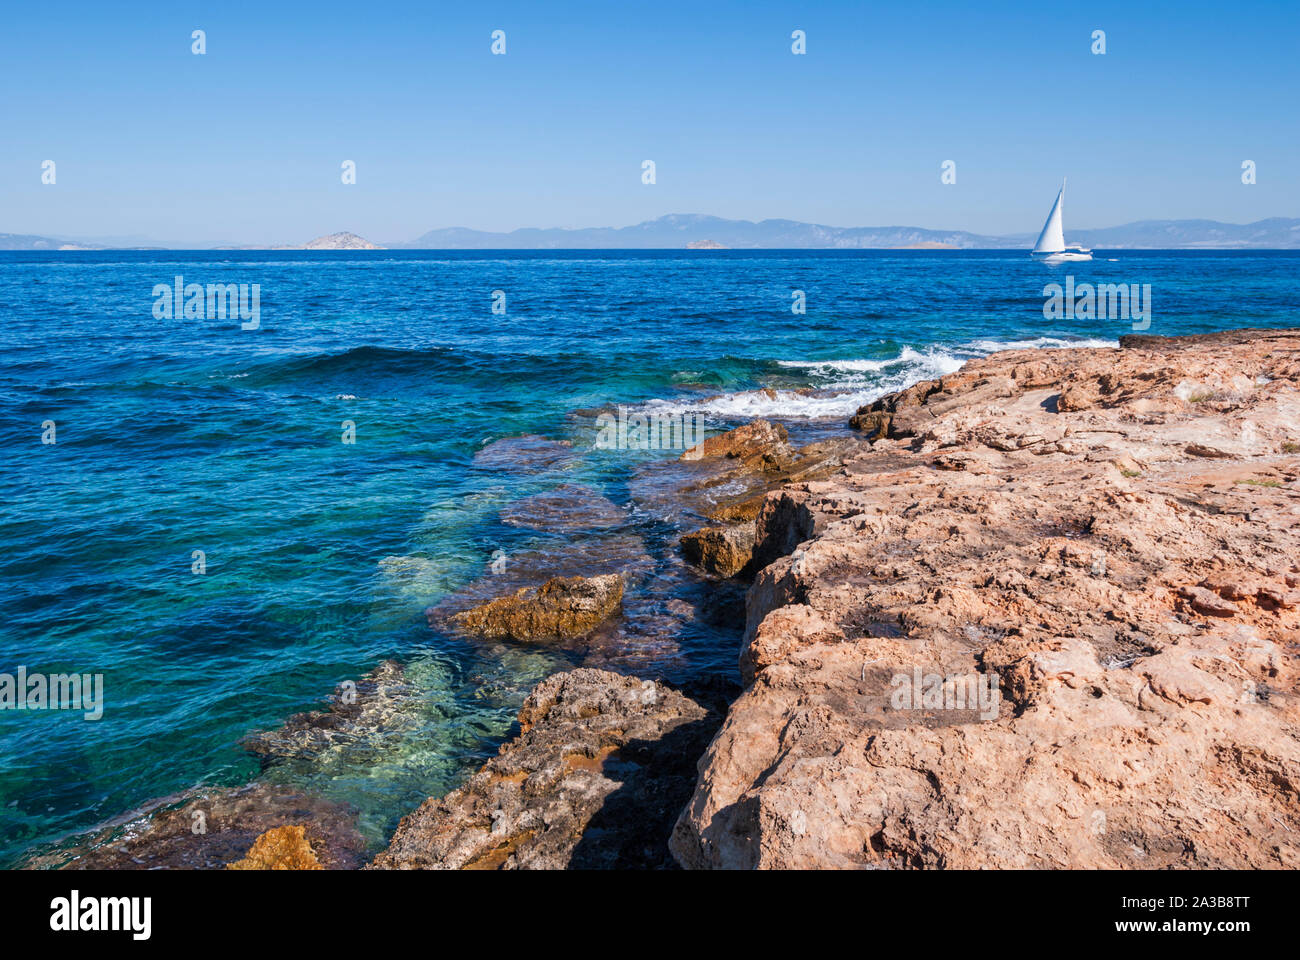 Uno yacht a vela passa vicino a una costa rocciosa Foto Stock